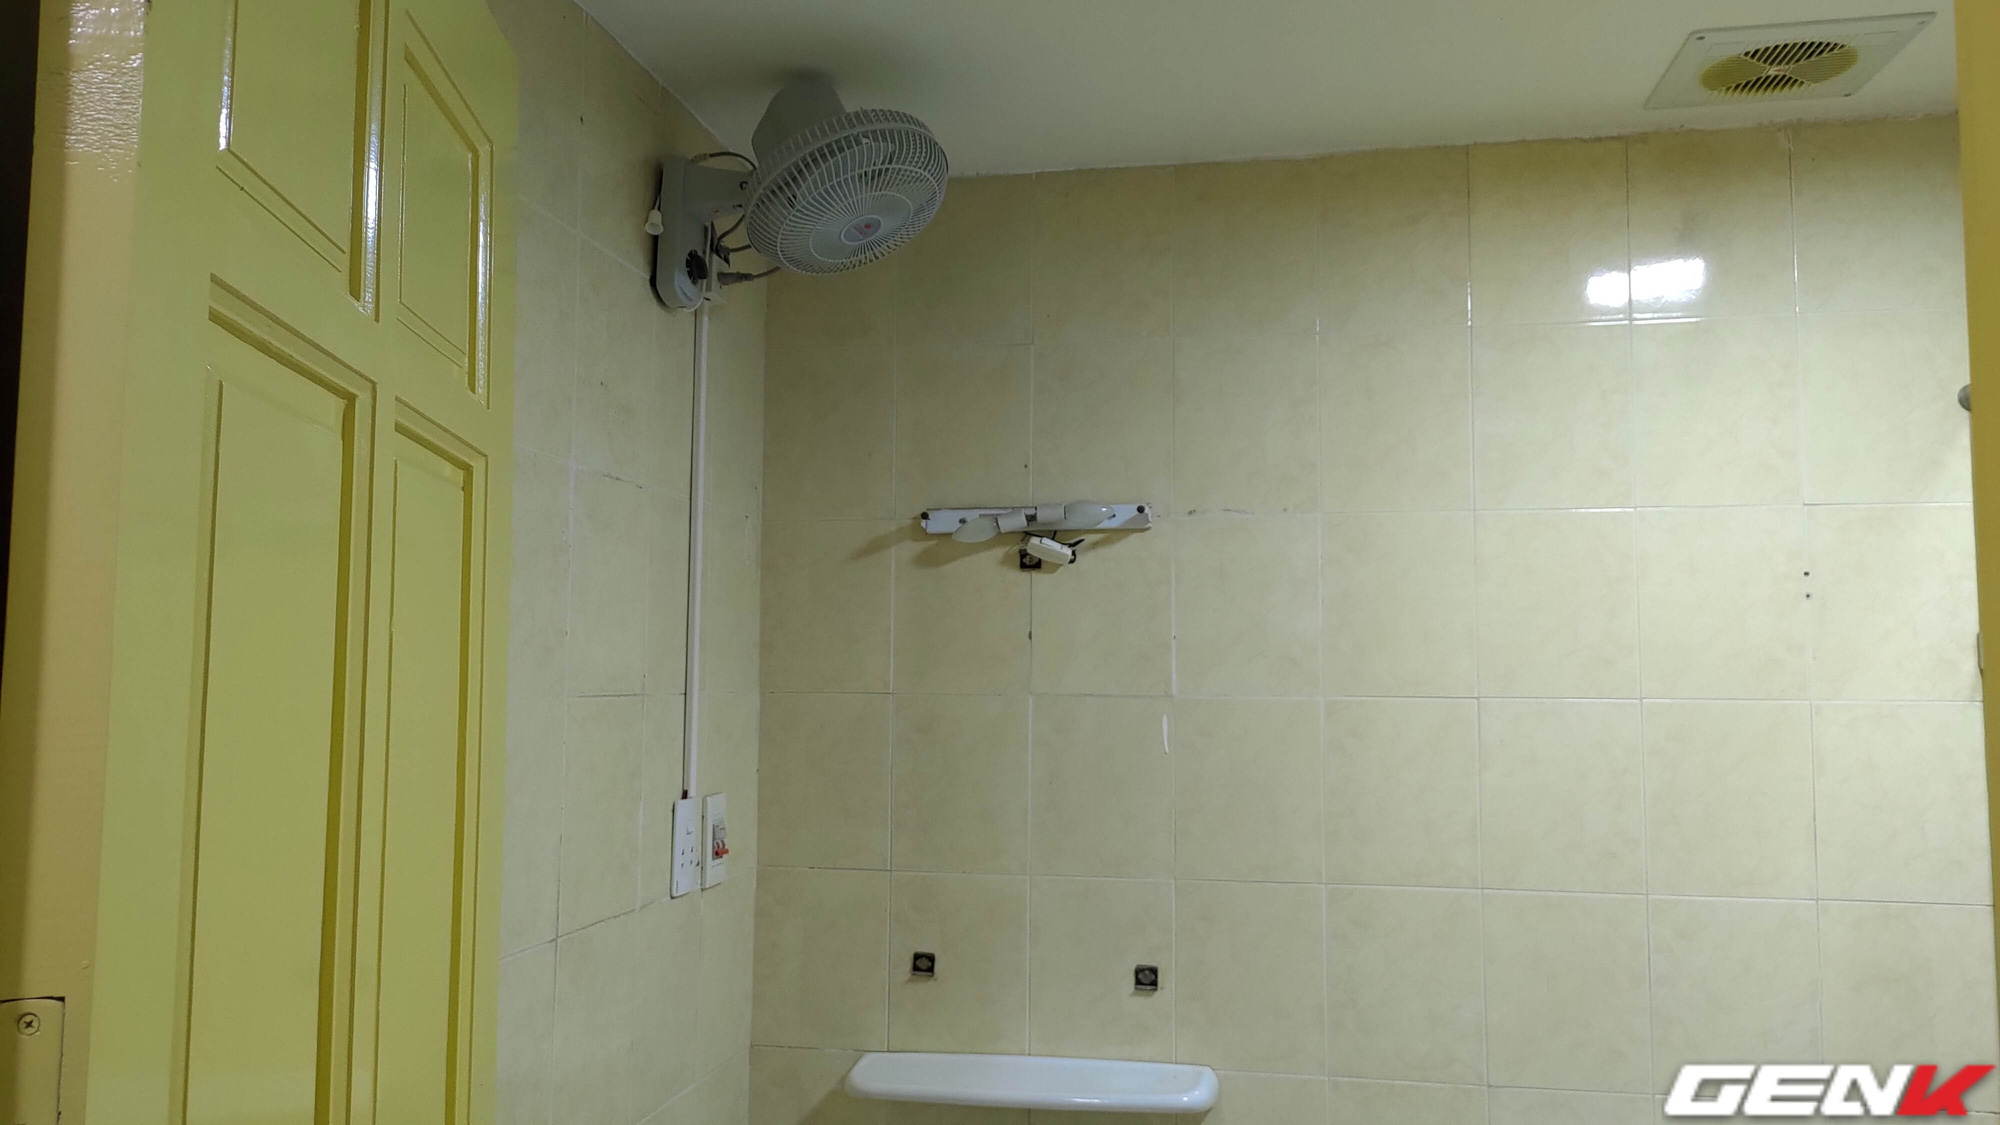 Quạt treo tường phòng vệ sinh: 
Không gian phòng vệ sinh cũng cần được thông thoáng và mát mẻ, và quạt treo tường phòng vệ sinh là giải pháp tối ưu cho điều đó. Cùng xem hình ảnh để tìm hiểu thêm về tính năng và thiết kế độc đáo của sản phẩm này nhé!